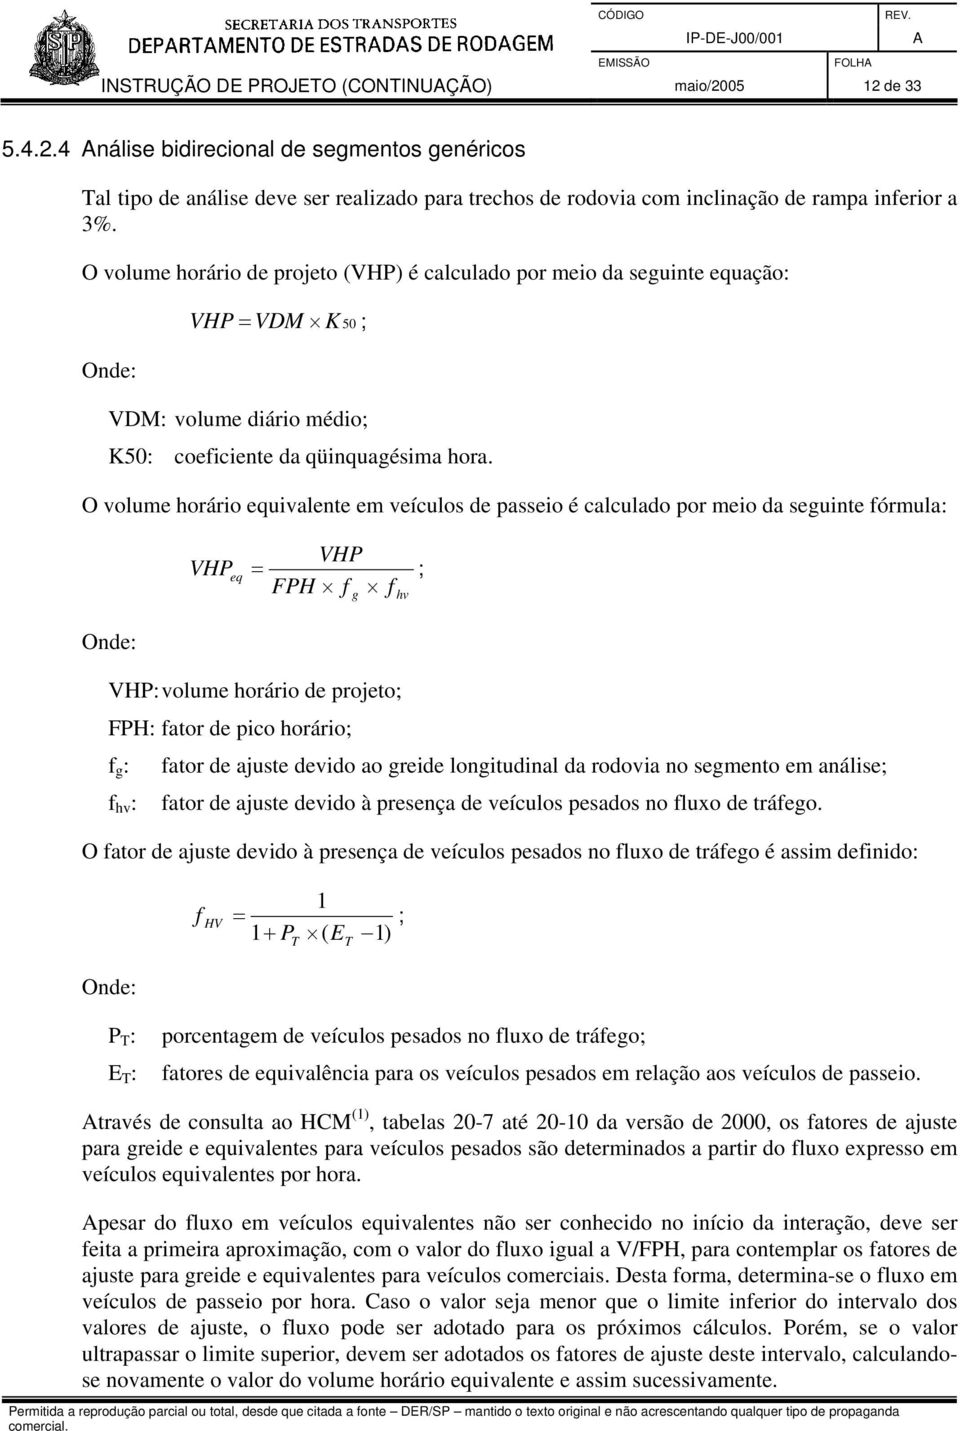 O volume horário equivalente em veículos de passeio é calculado por meio da seguinte fórmula: VHP eq = VHP FPH f f ; g hv VHP: volume horário de projeto; FPH: fator de pico horário; f g : fator de